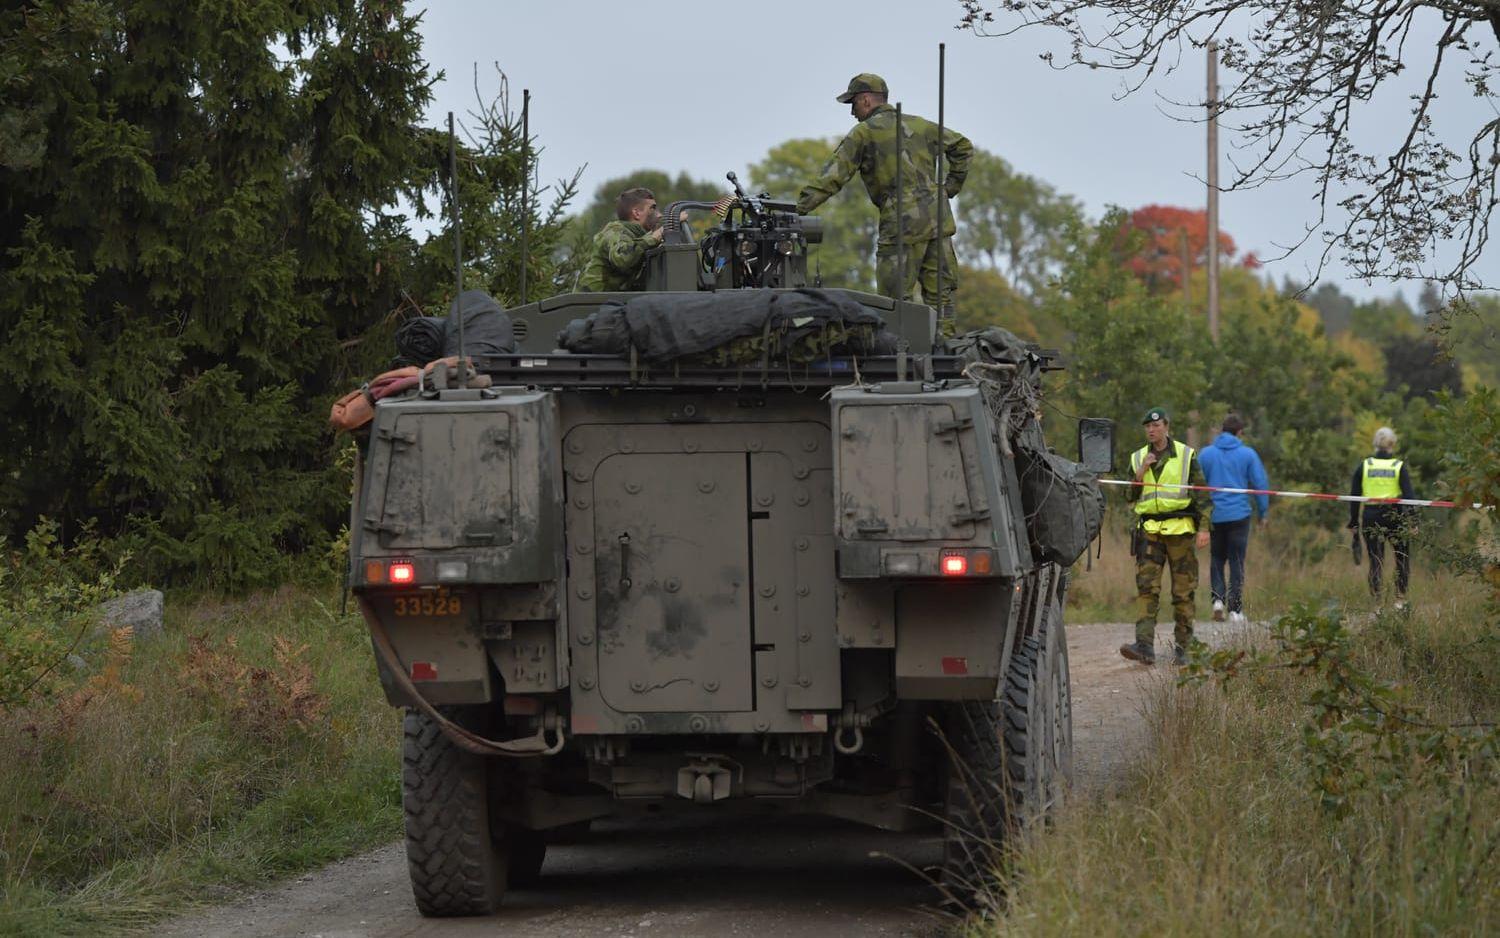 Ett persontåg har krockat med en stridsvagn och spårat ur i närheten av Trosa i Södermanland på tisdagseftermiddagen. Fyra personer är skadade, tre från försvarsmakten och en på tåget. Foto: TT
